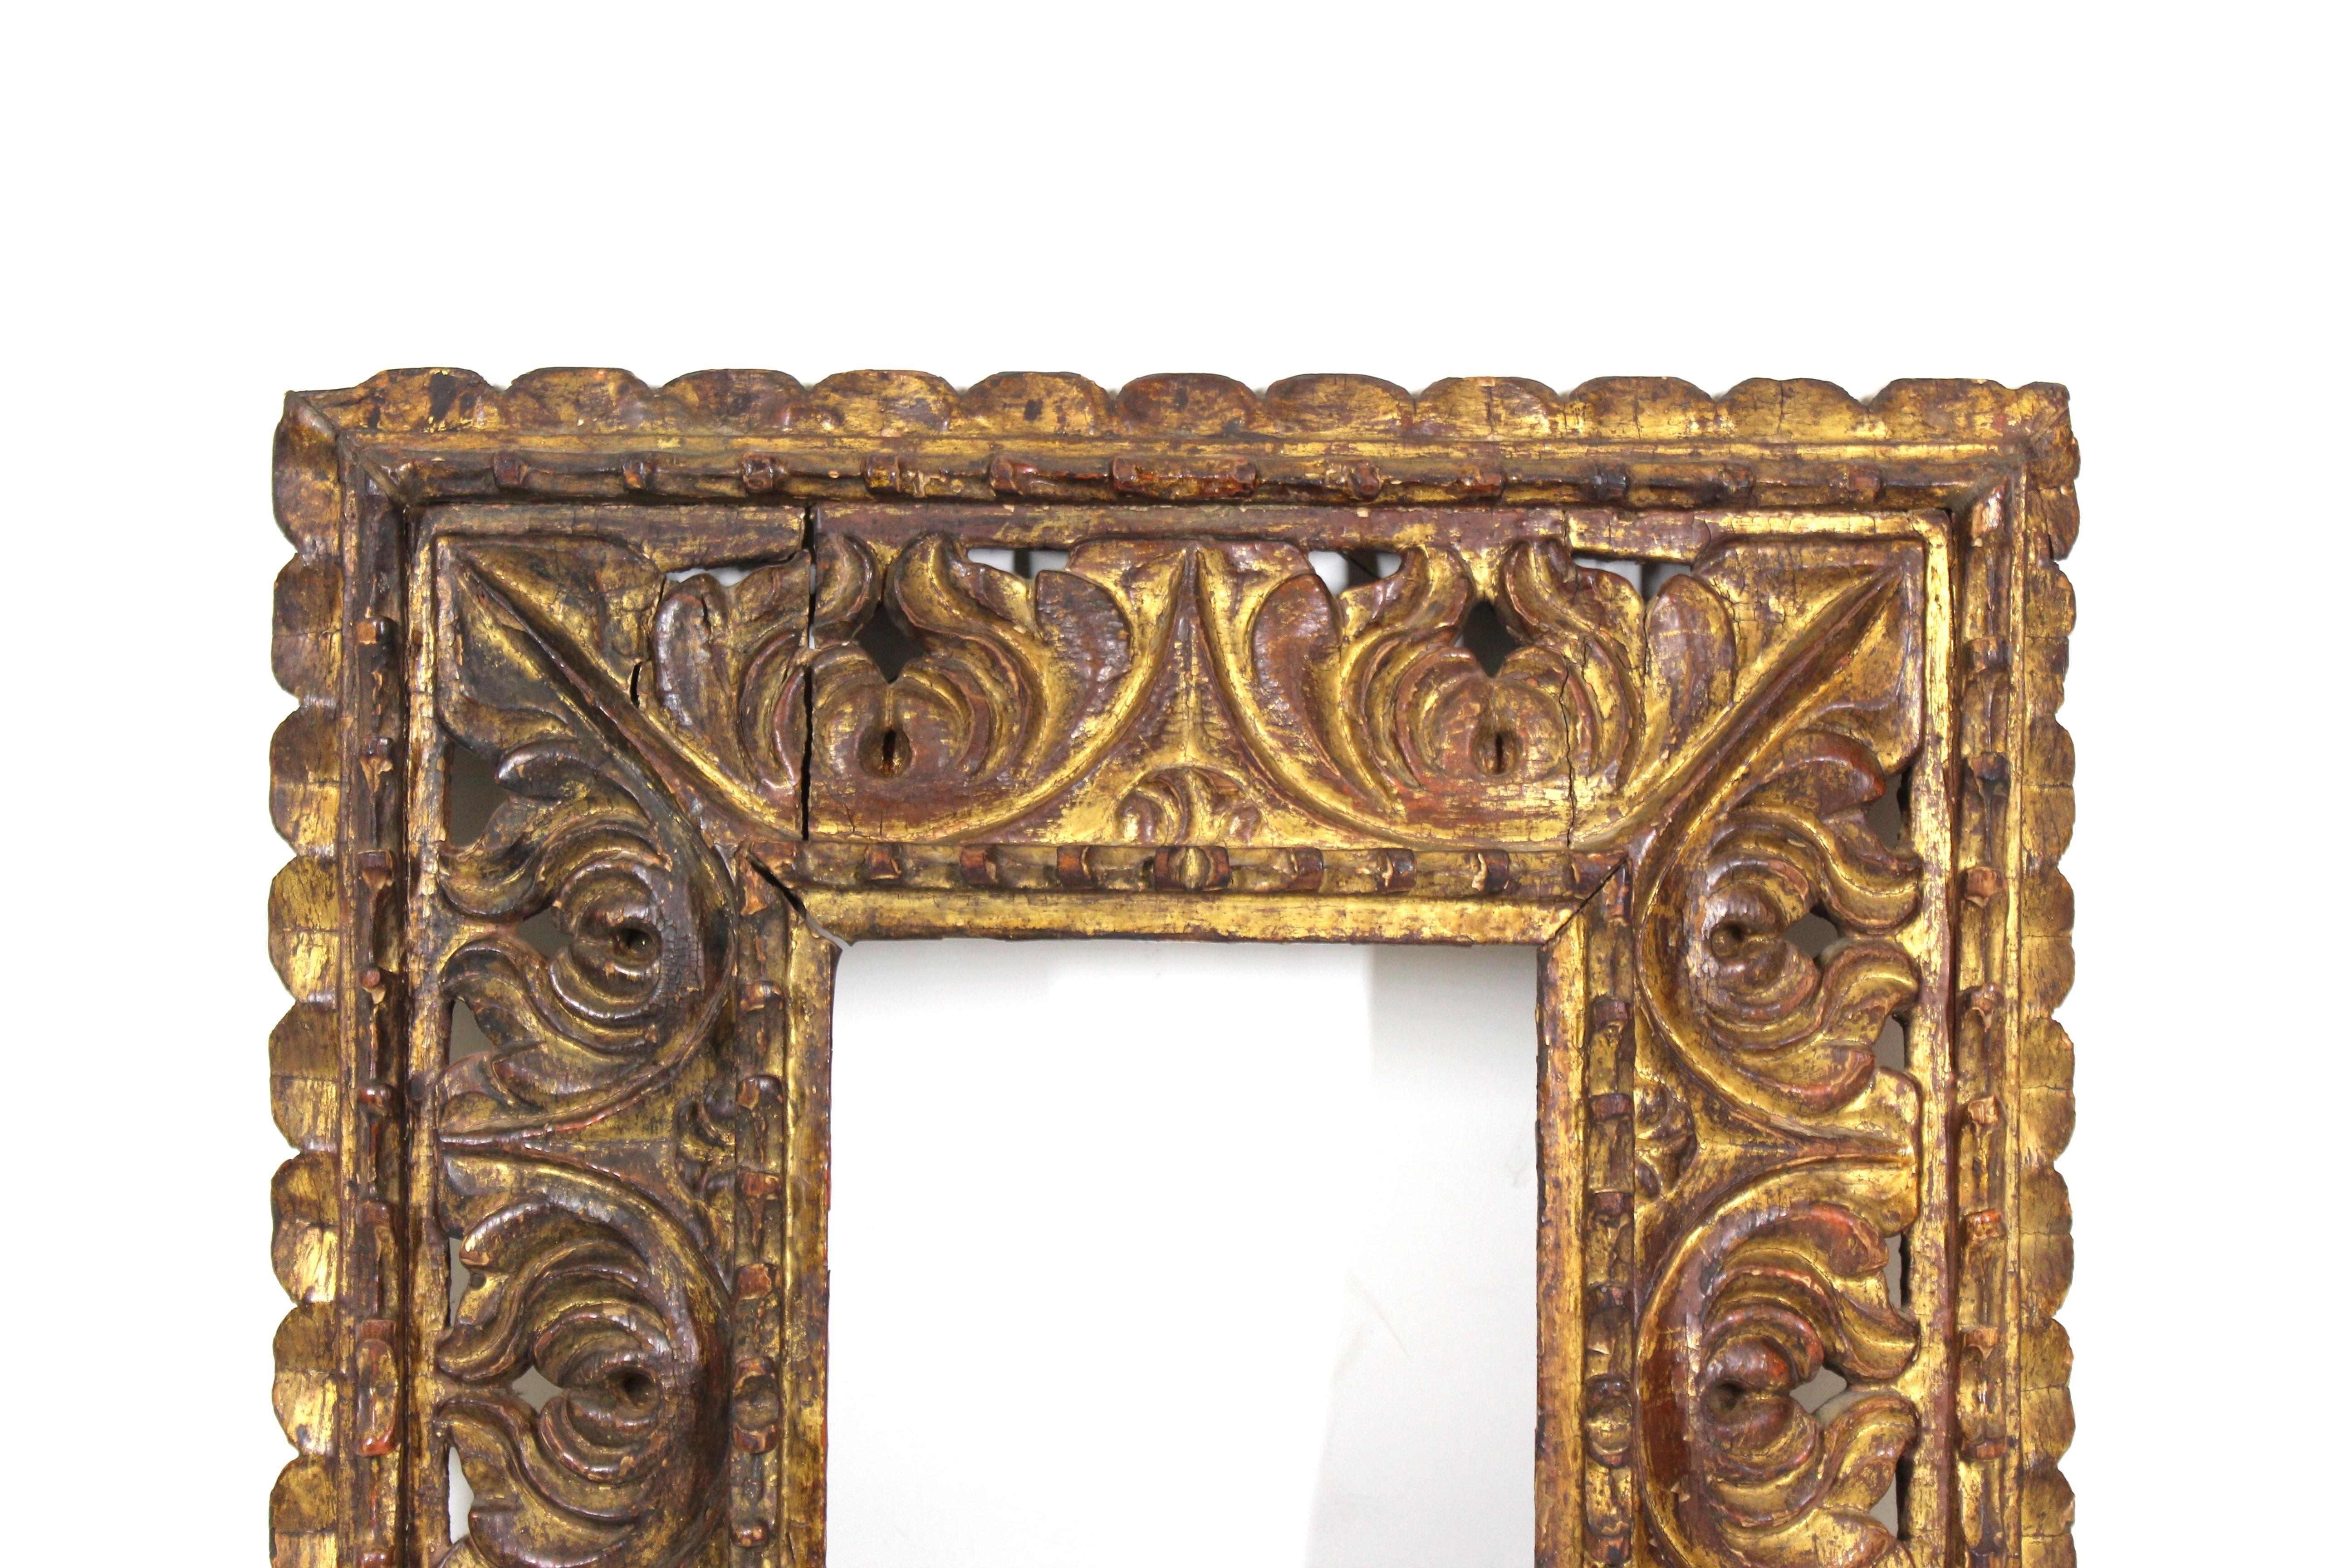 Südamerikanischer Barockrahmen aus vergoldetem Holz mit schwerem, durchbrochenem Schnitzwerk. Das Stück wurde im 18. Jahrhundert in Südamerika hergestellt und befindet sich in einem bemerkenswerten antiken Zustand mit altersgemäßer Abnutzung und